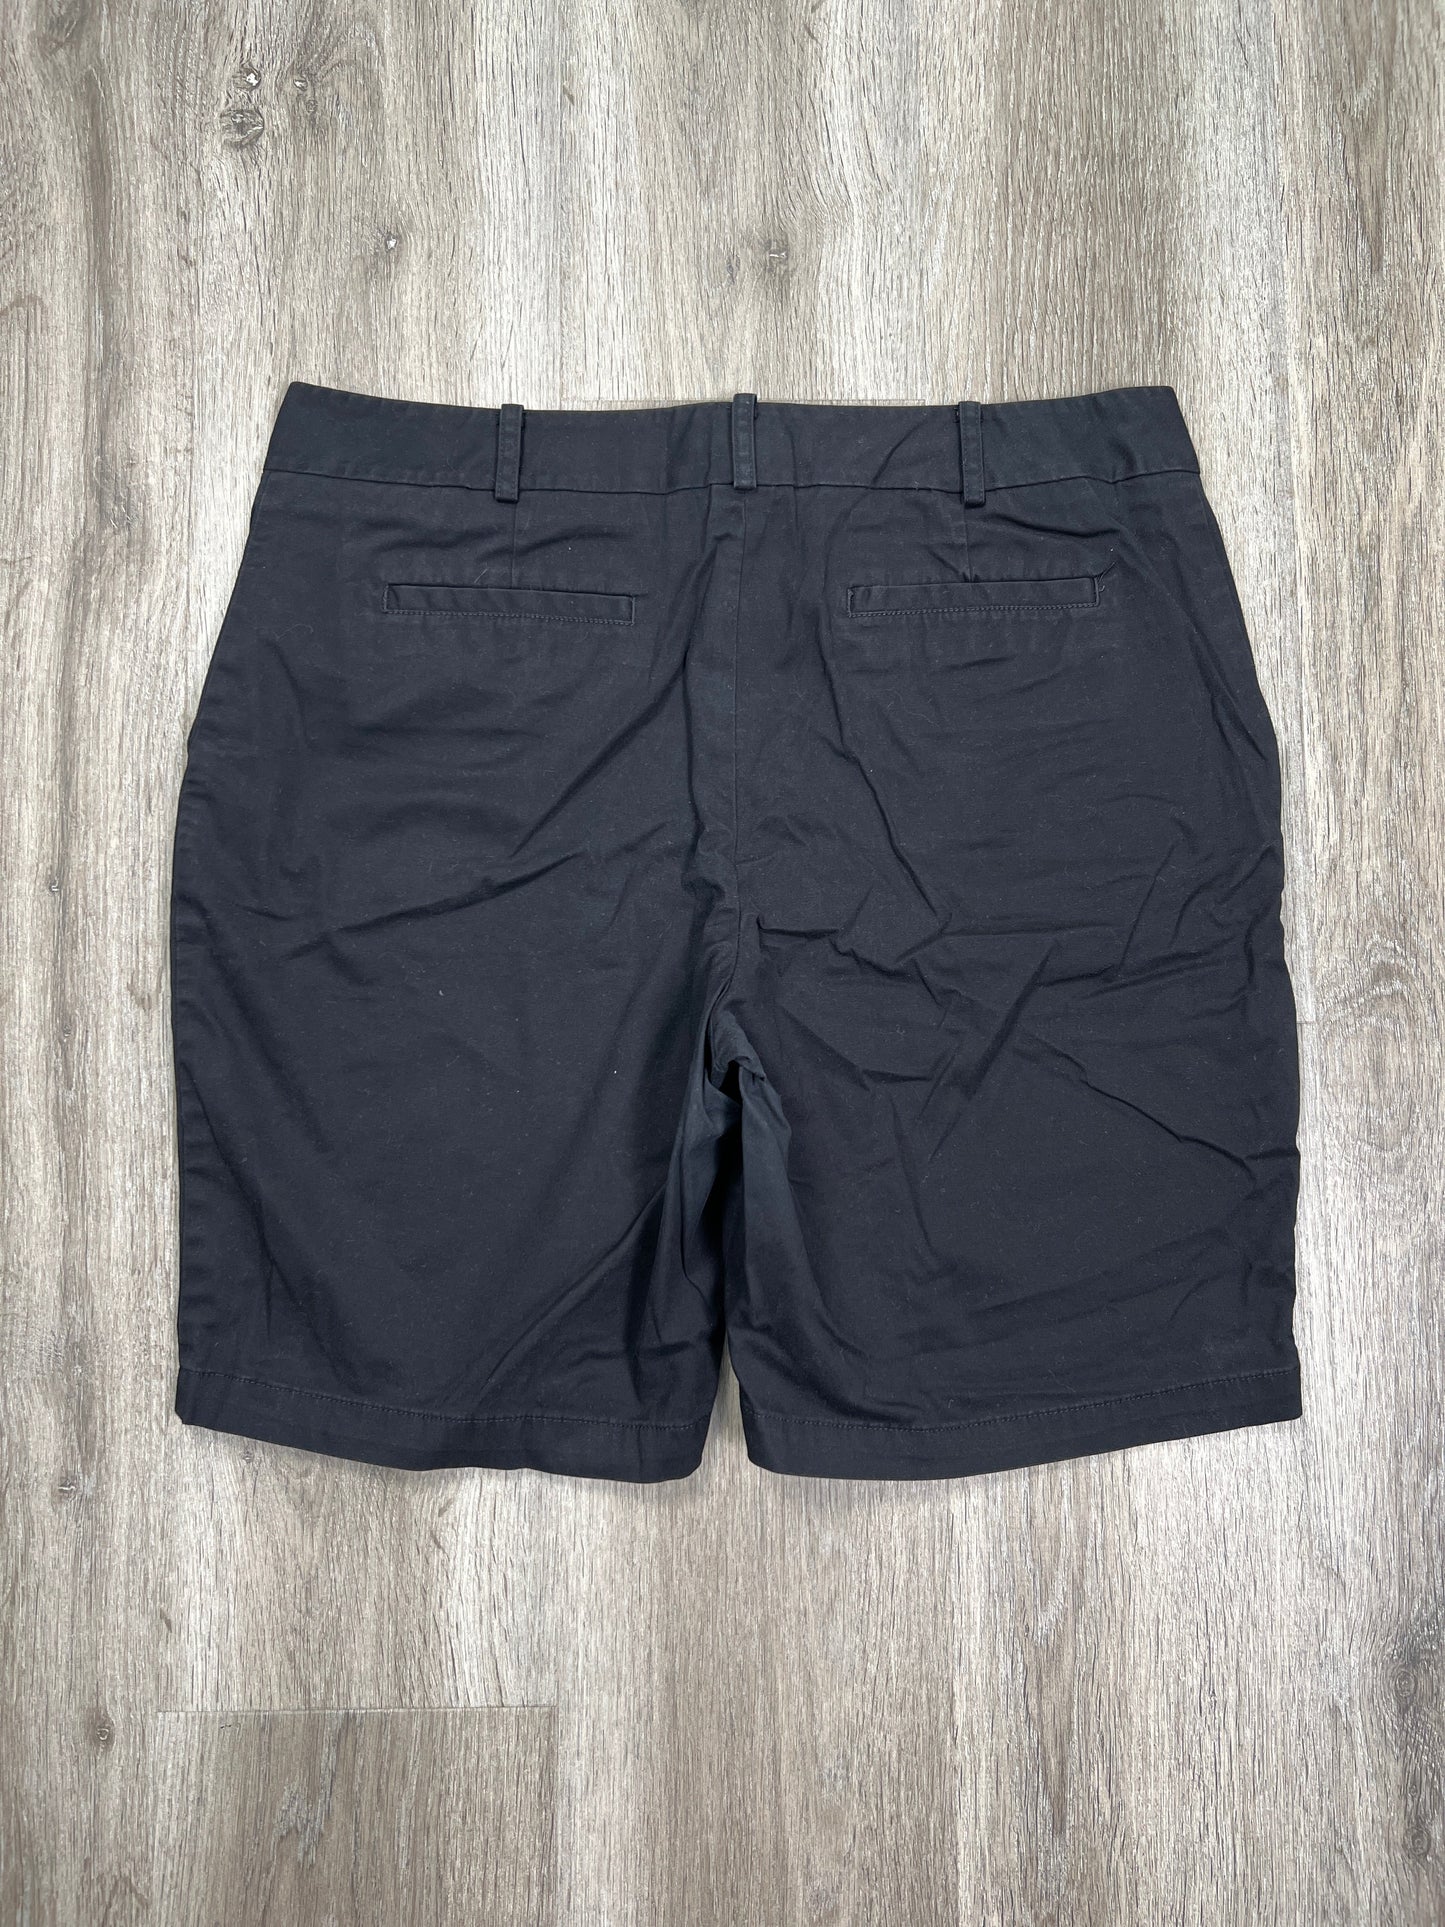 Black Shorts Talbots, Size M